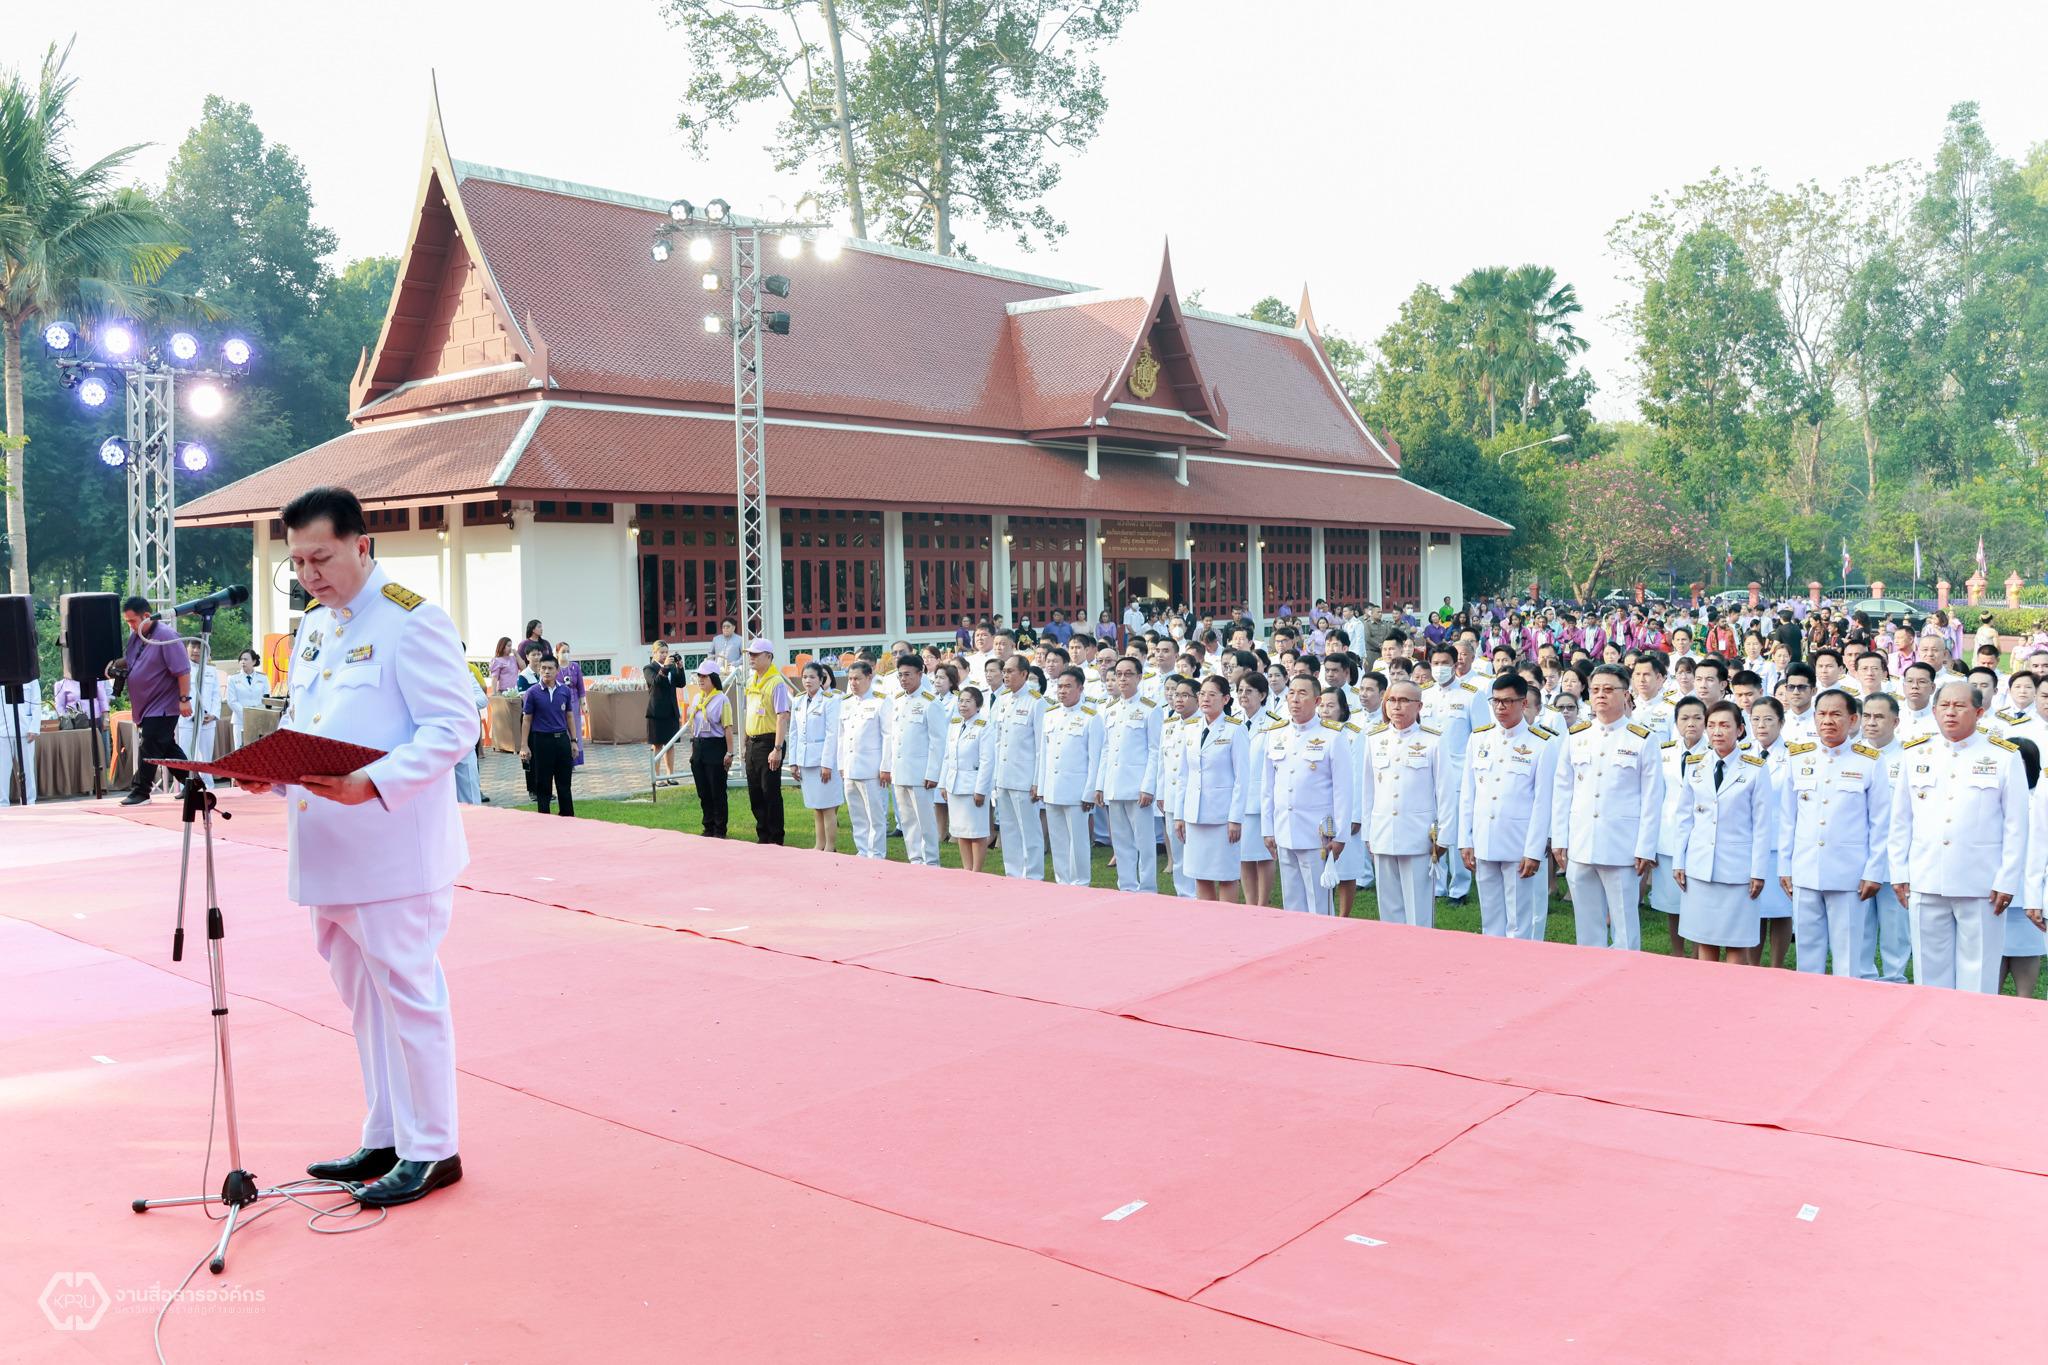 3. วันอนุรักษ์มรดกไทย เพื่อเฉลิมพระเกียรติสมเด็จพระกนิษฐาธิราชเจ้า กรมสมเด็จพระเทพรัตนราชสุดาฯ สยามบรมราชกุมารี